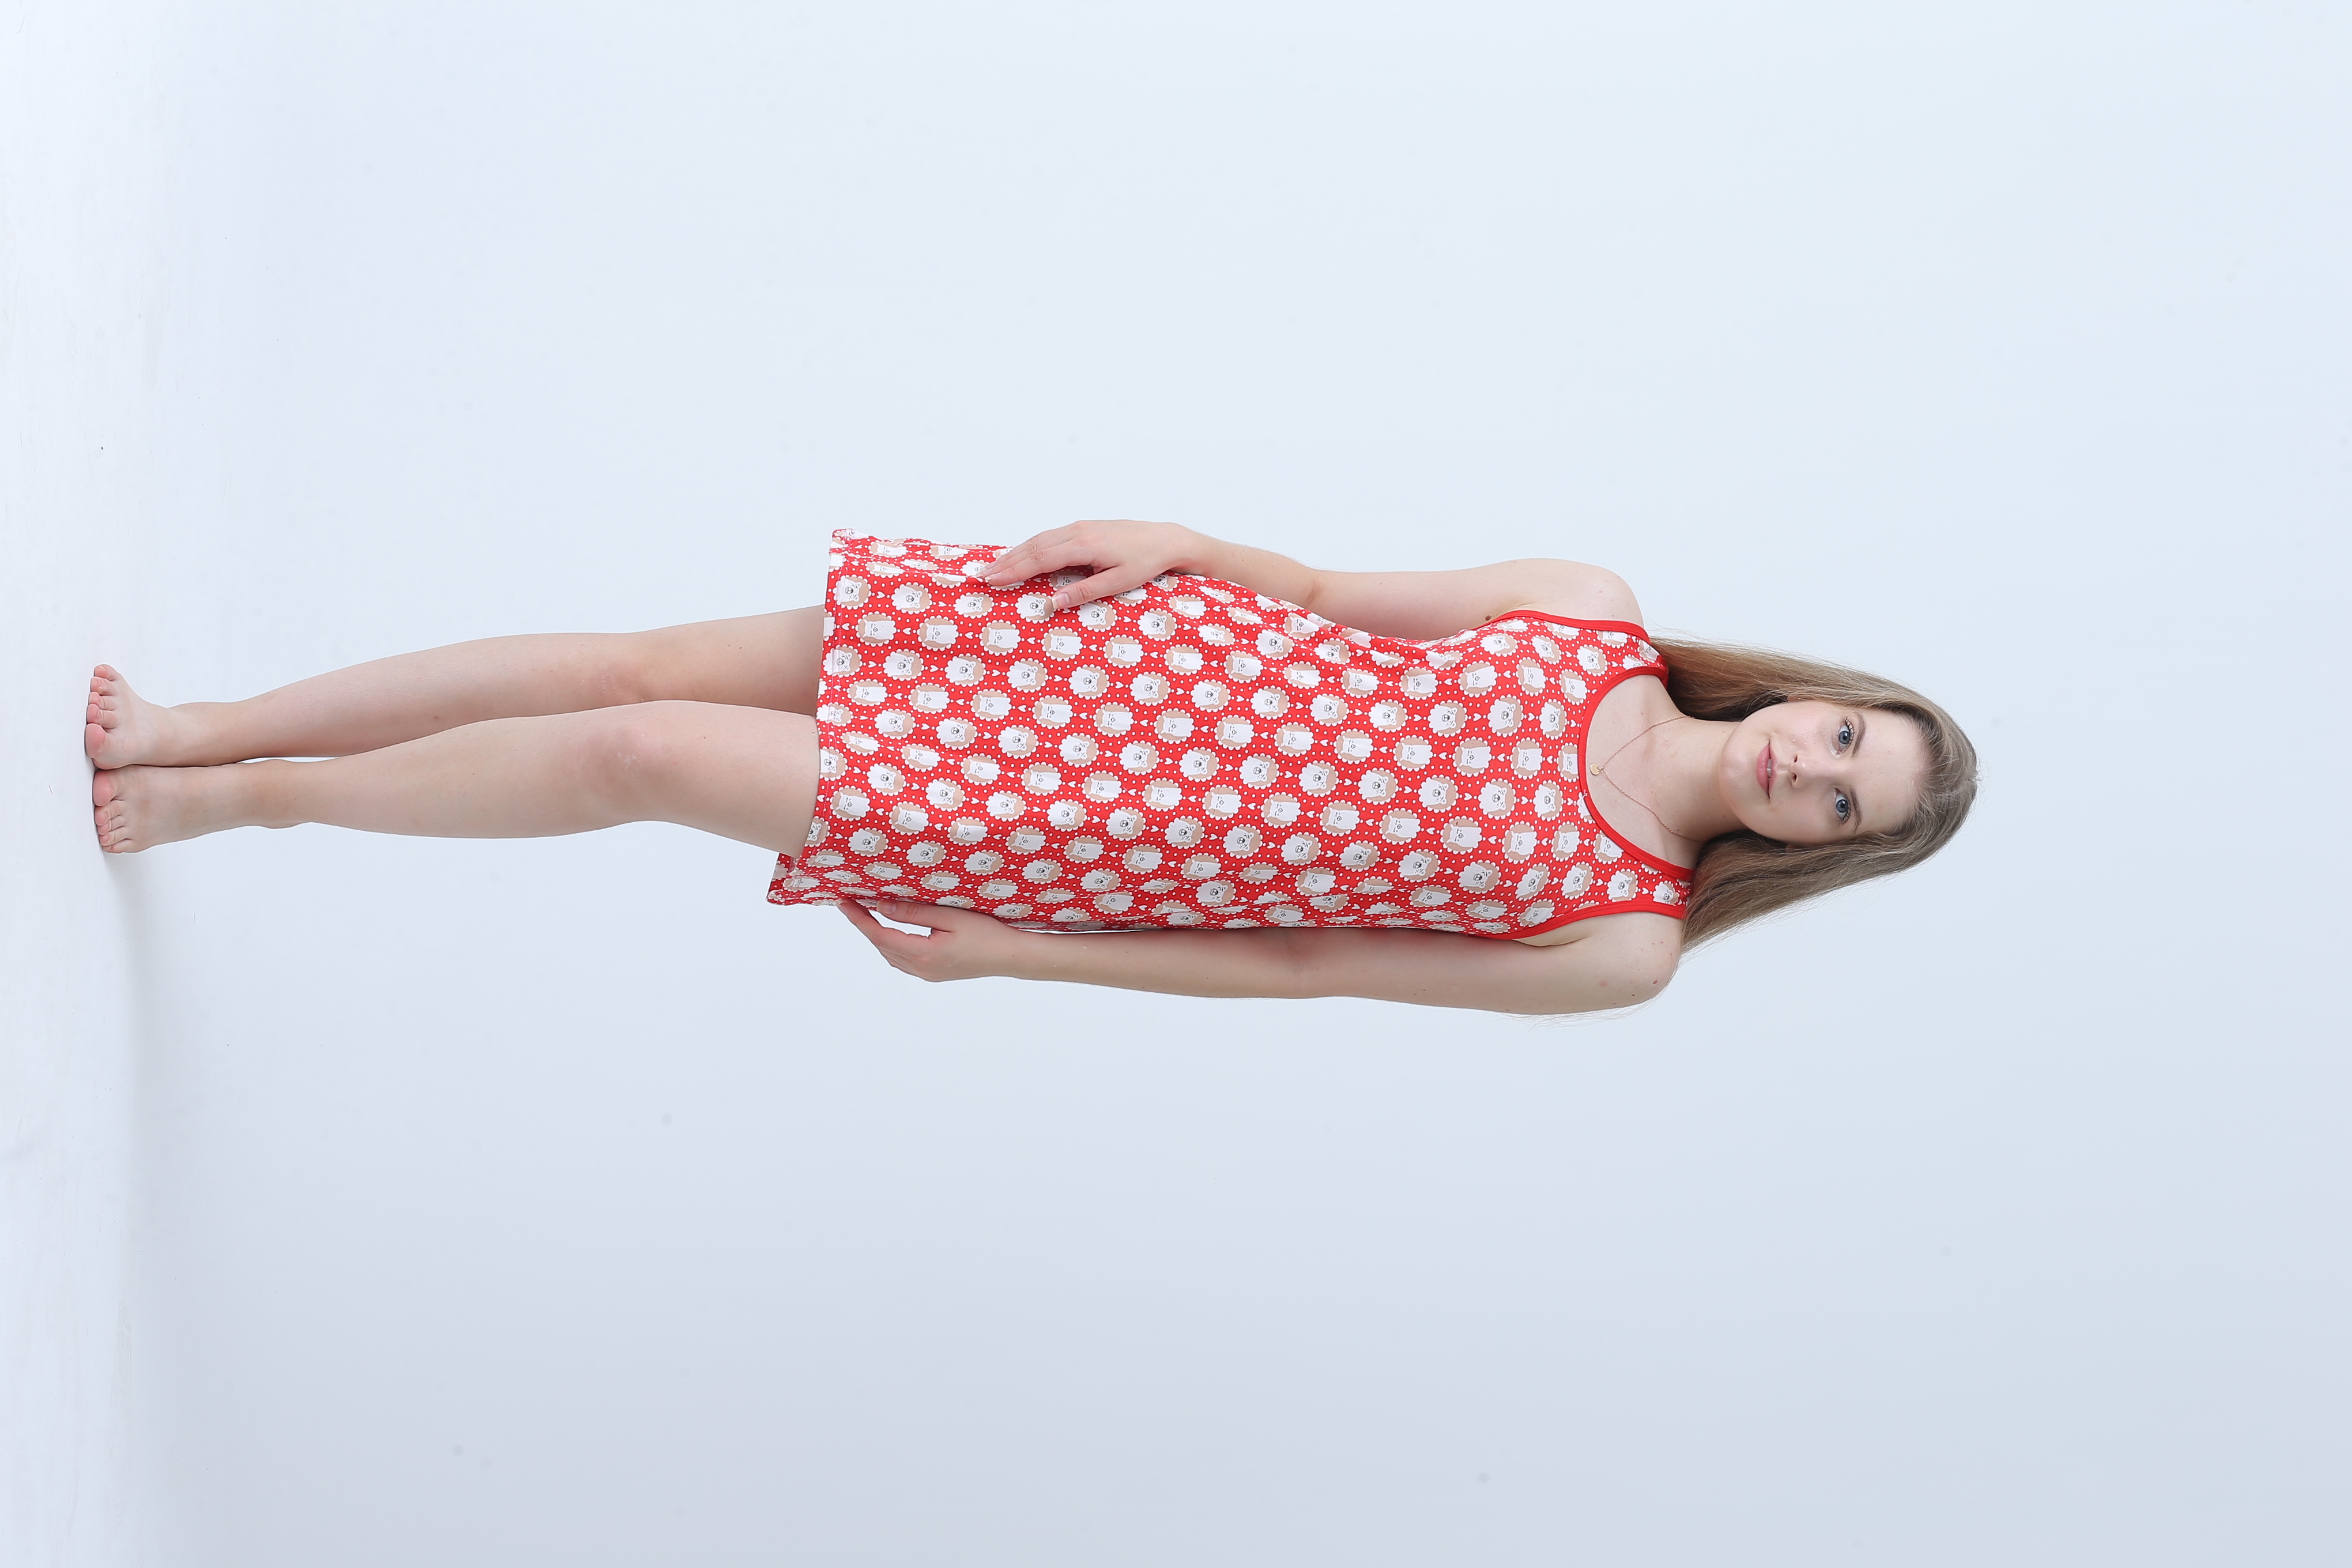 厂家直销牛奶丝2022新款女士睡衣睡裙红色波点睡裙                                   图